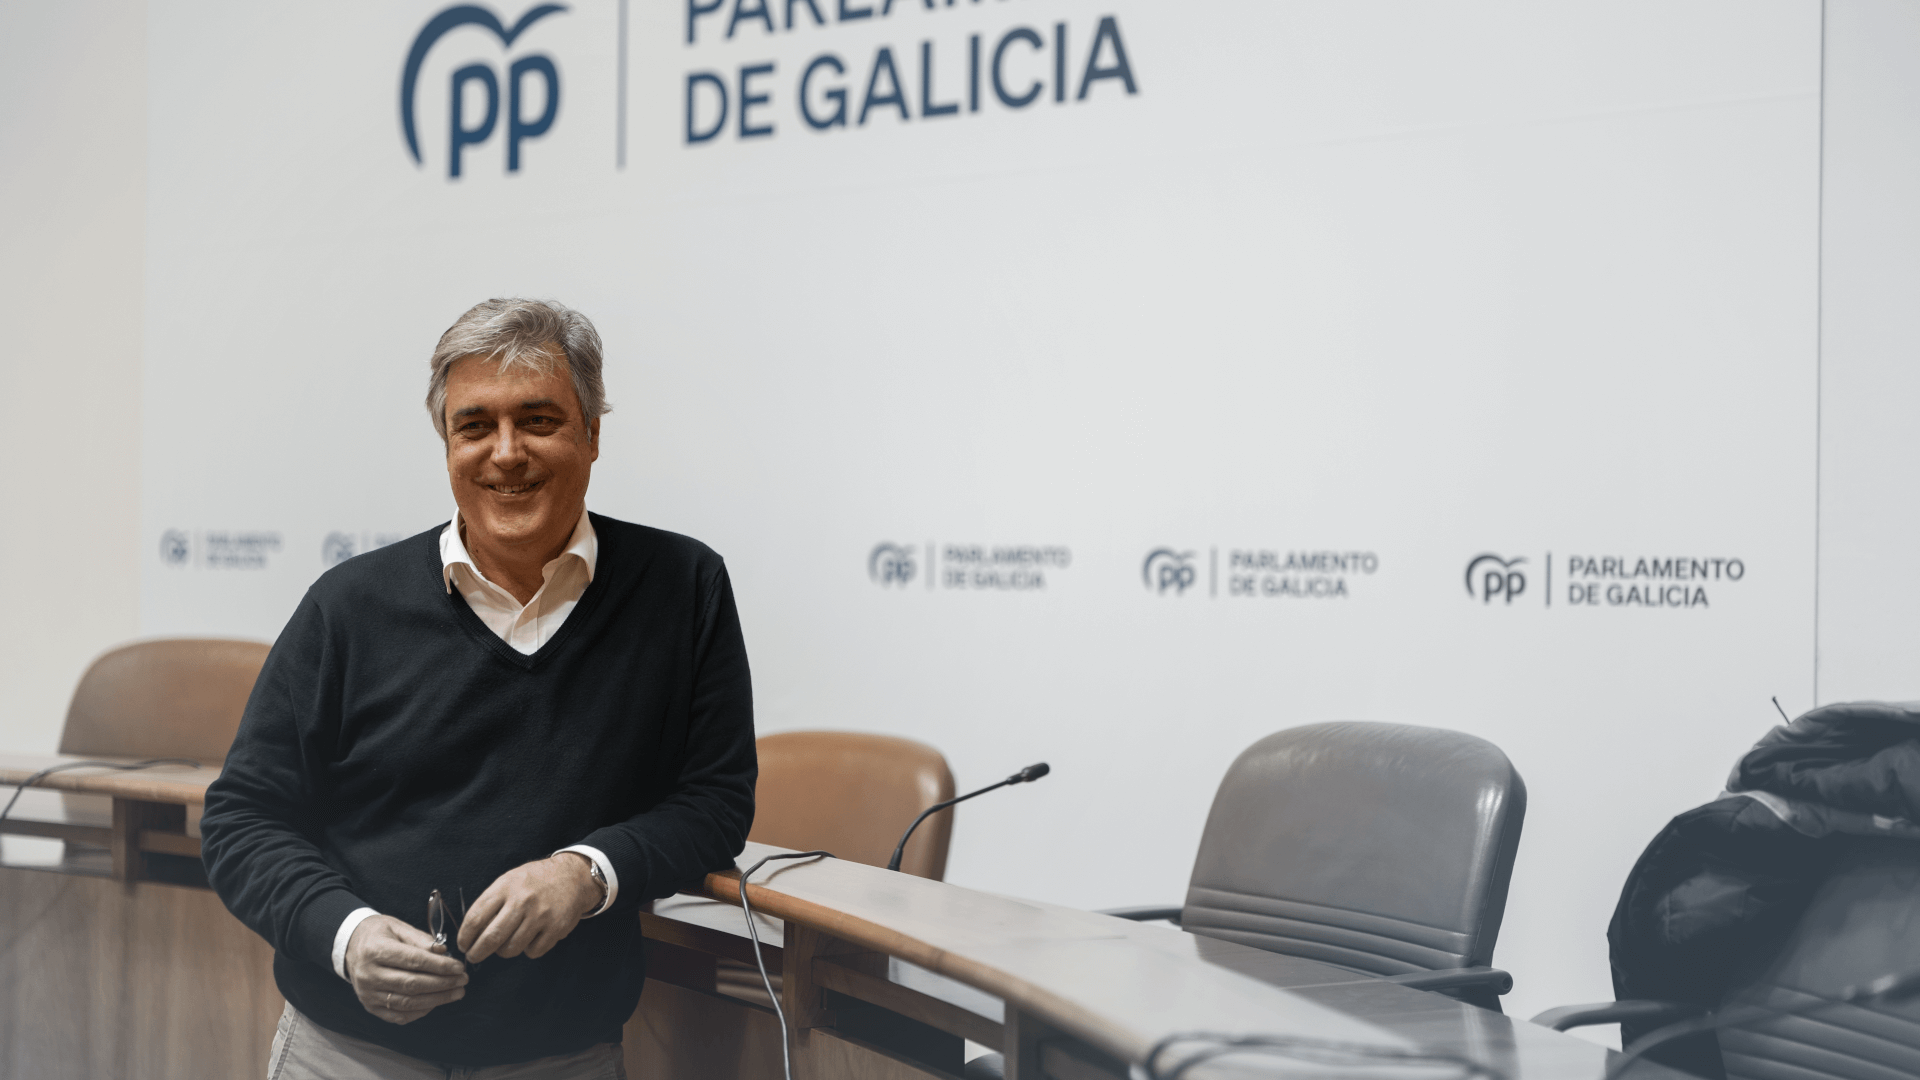 Pedro Puy Fraga é porta-voz do grupo parlamentar do Partido Popular da Galiza desde março de 2011